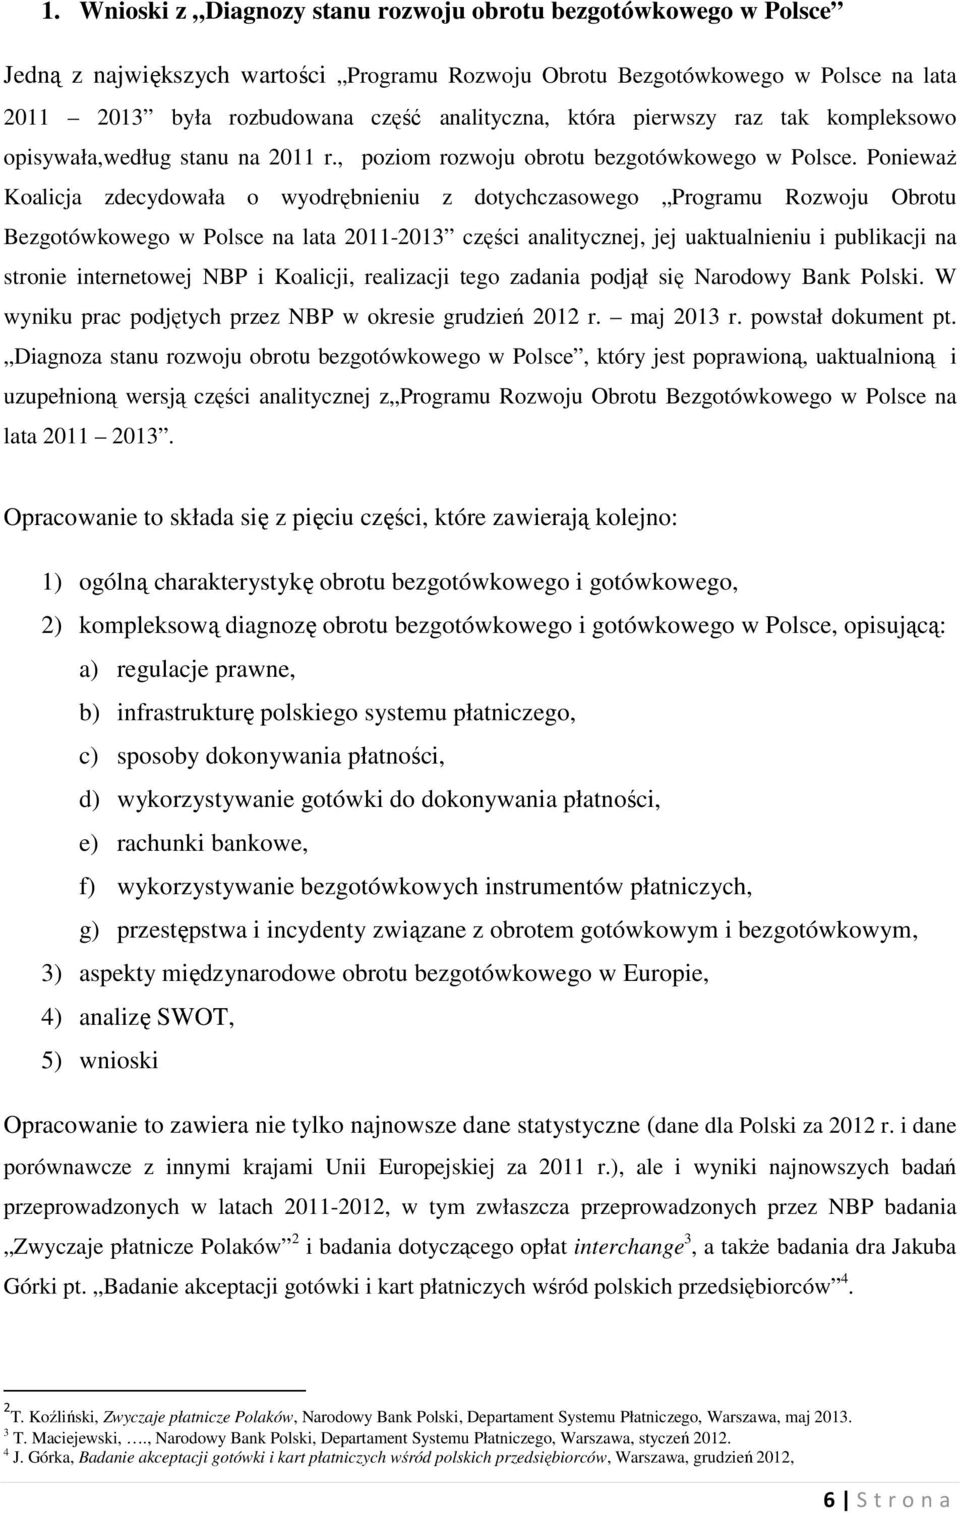 Ponieważ Koalicja zdecydowała o wyodrębnieniu z dotychczasowego Programu Rozwoju Obrotu Bezgotówkowego w Polsce na lata 2011-2013 części analitycznej, jej uaktualnieniu i publikacji na stronie